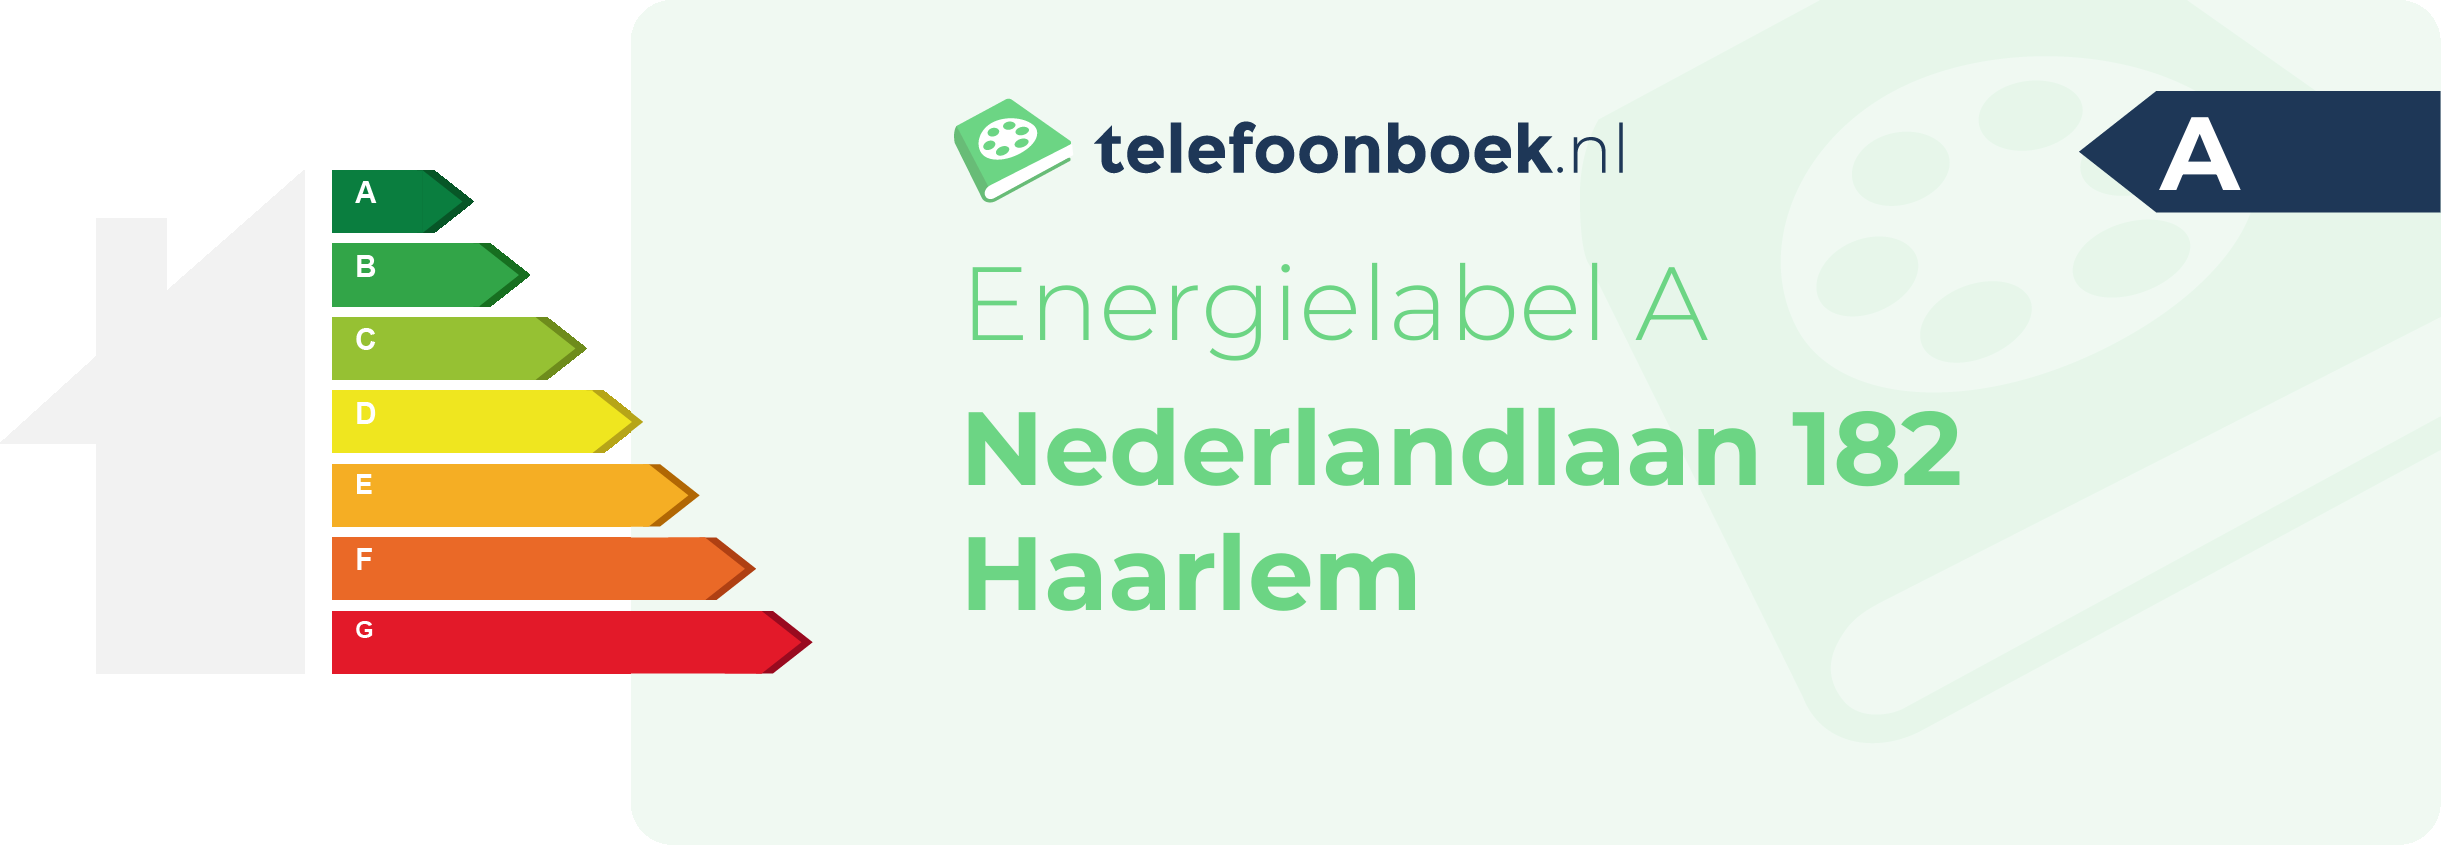 Energielabel Nederlandlaan 182 Haarlem